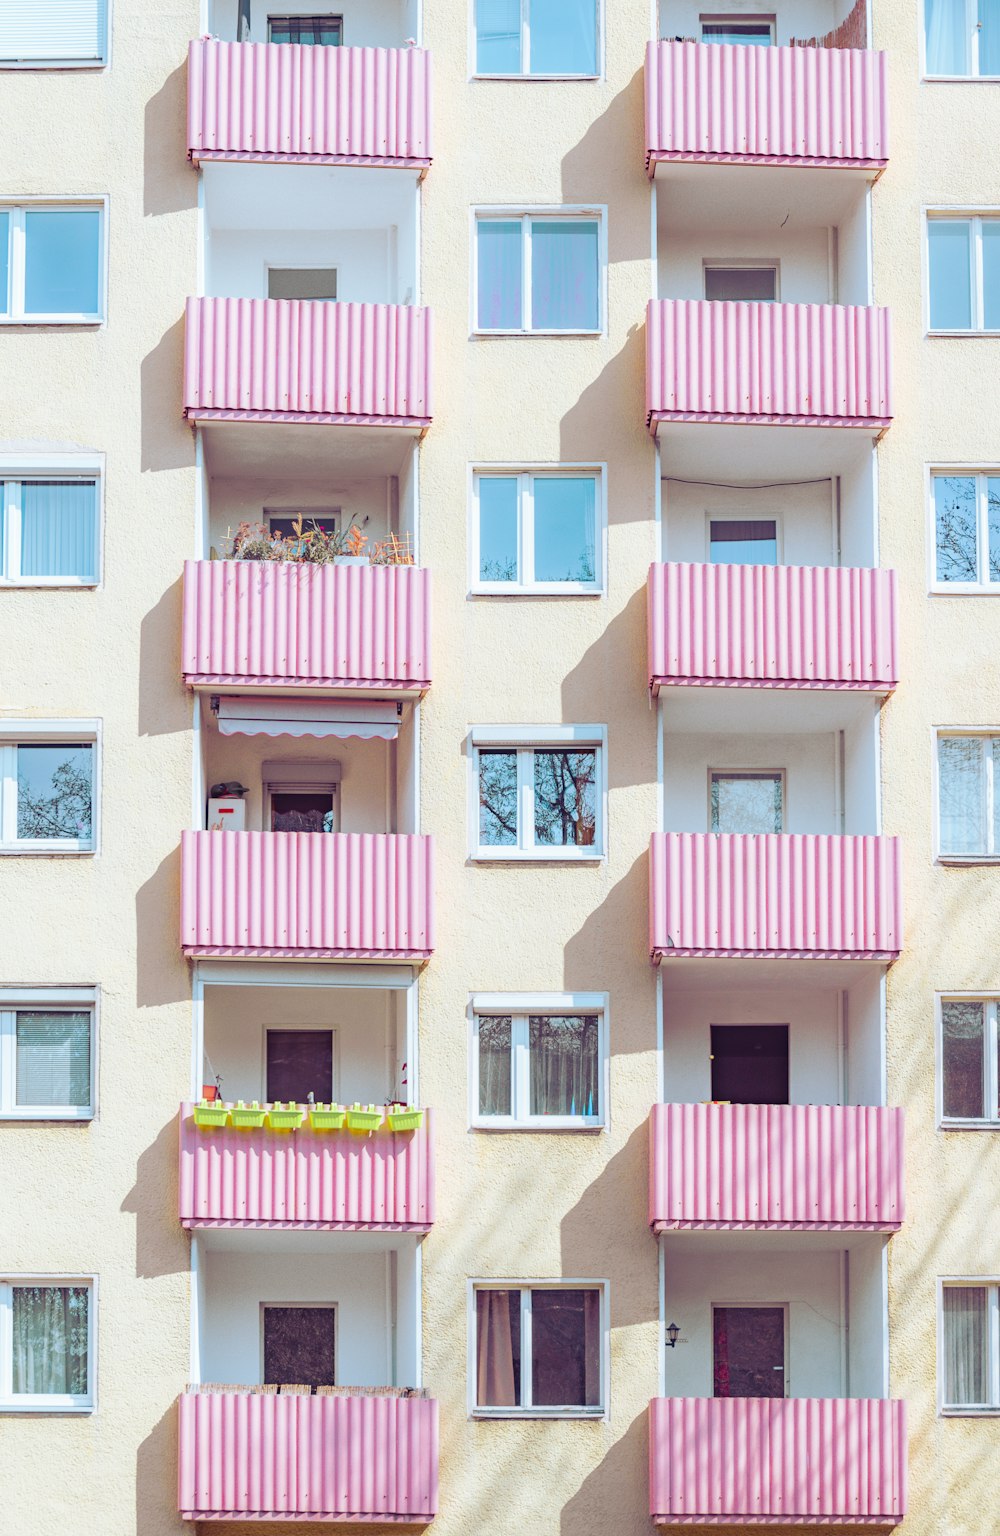 Ein rosa-weißes Gebäude mit Balkonen und Fenstern